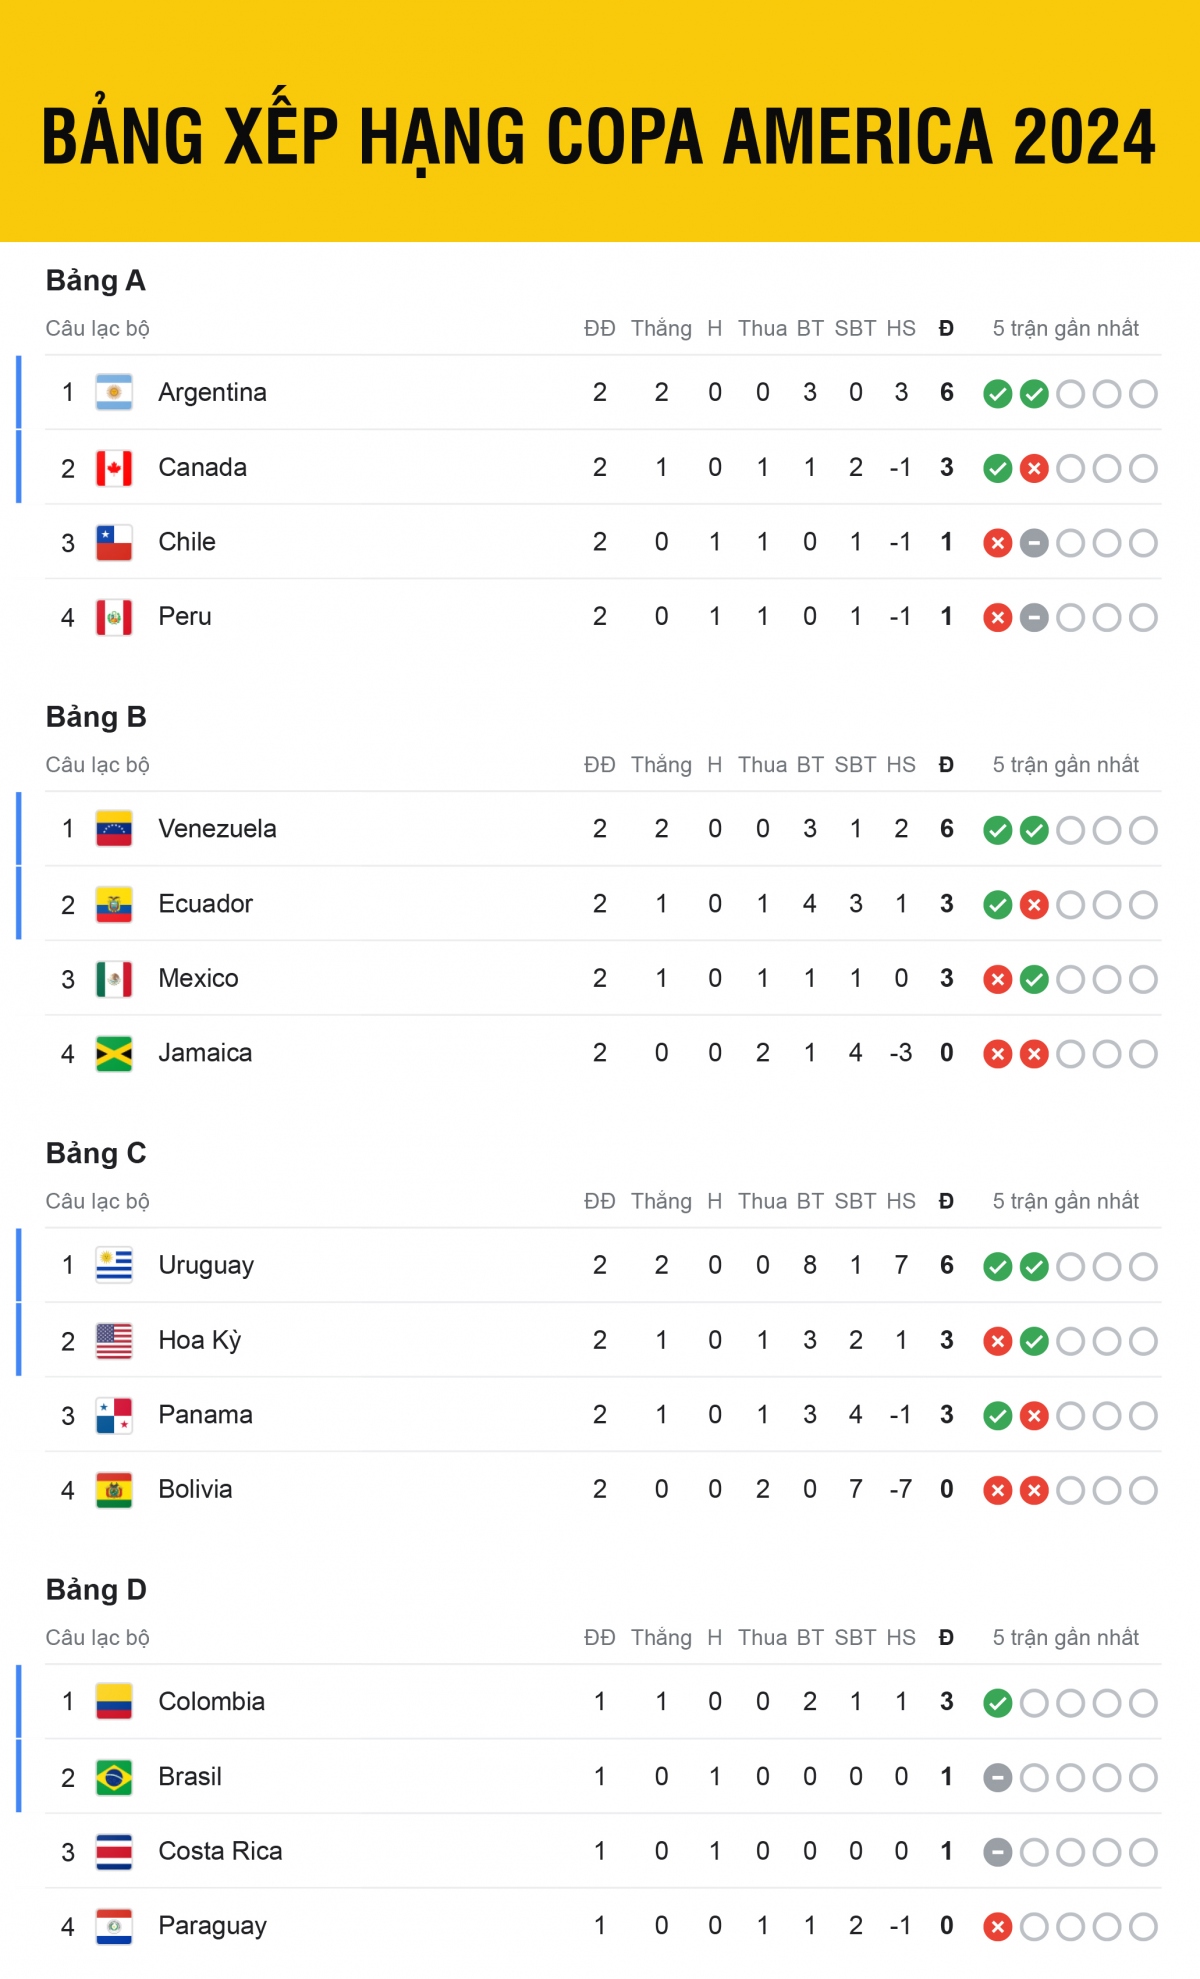 Bảng xếp hạng Copa America 2024 mới nhất: Mỹ nguy cơ bị loại từ vòng bảng